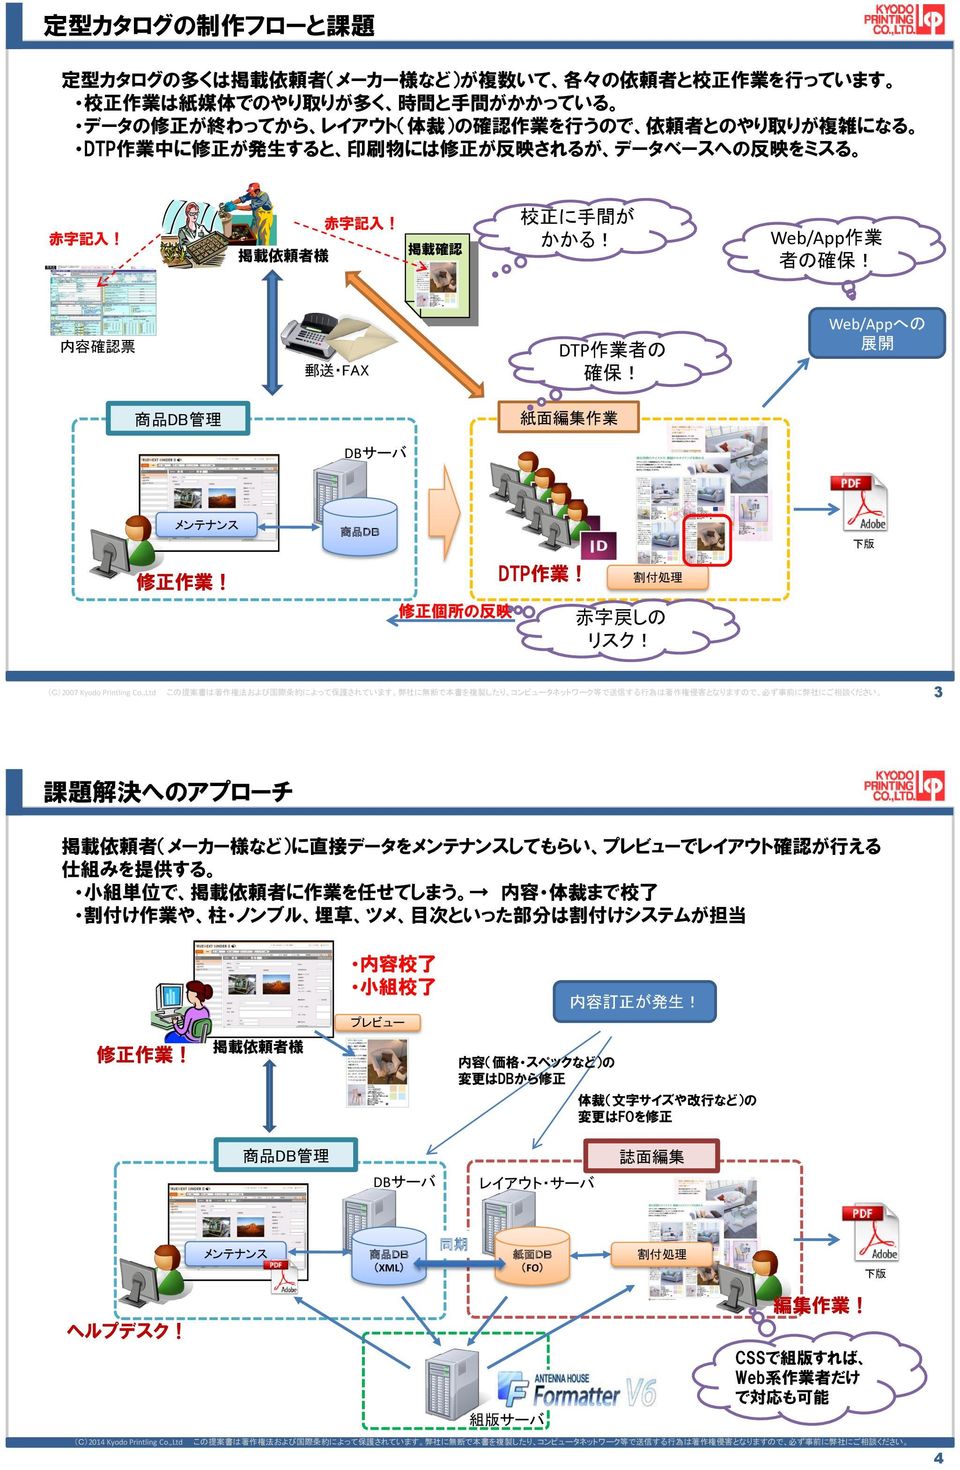 Web/Appへの 展 開 管 理 紙 面 編 集 作 業 DTP 作 業! 修 正 個 所 の 反 映 赤 字 戻 しの リスク! (C)2007 Kyodo Printling Co.